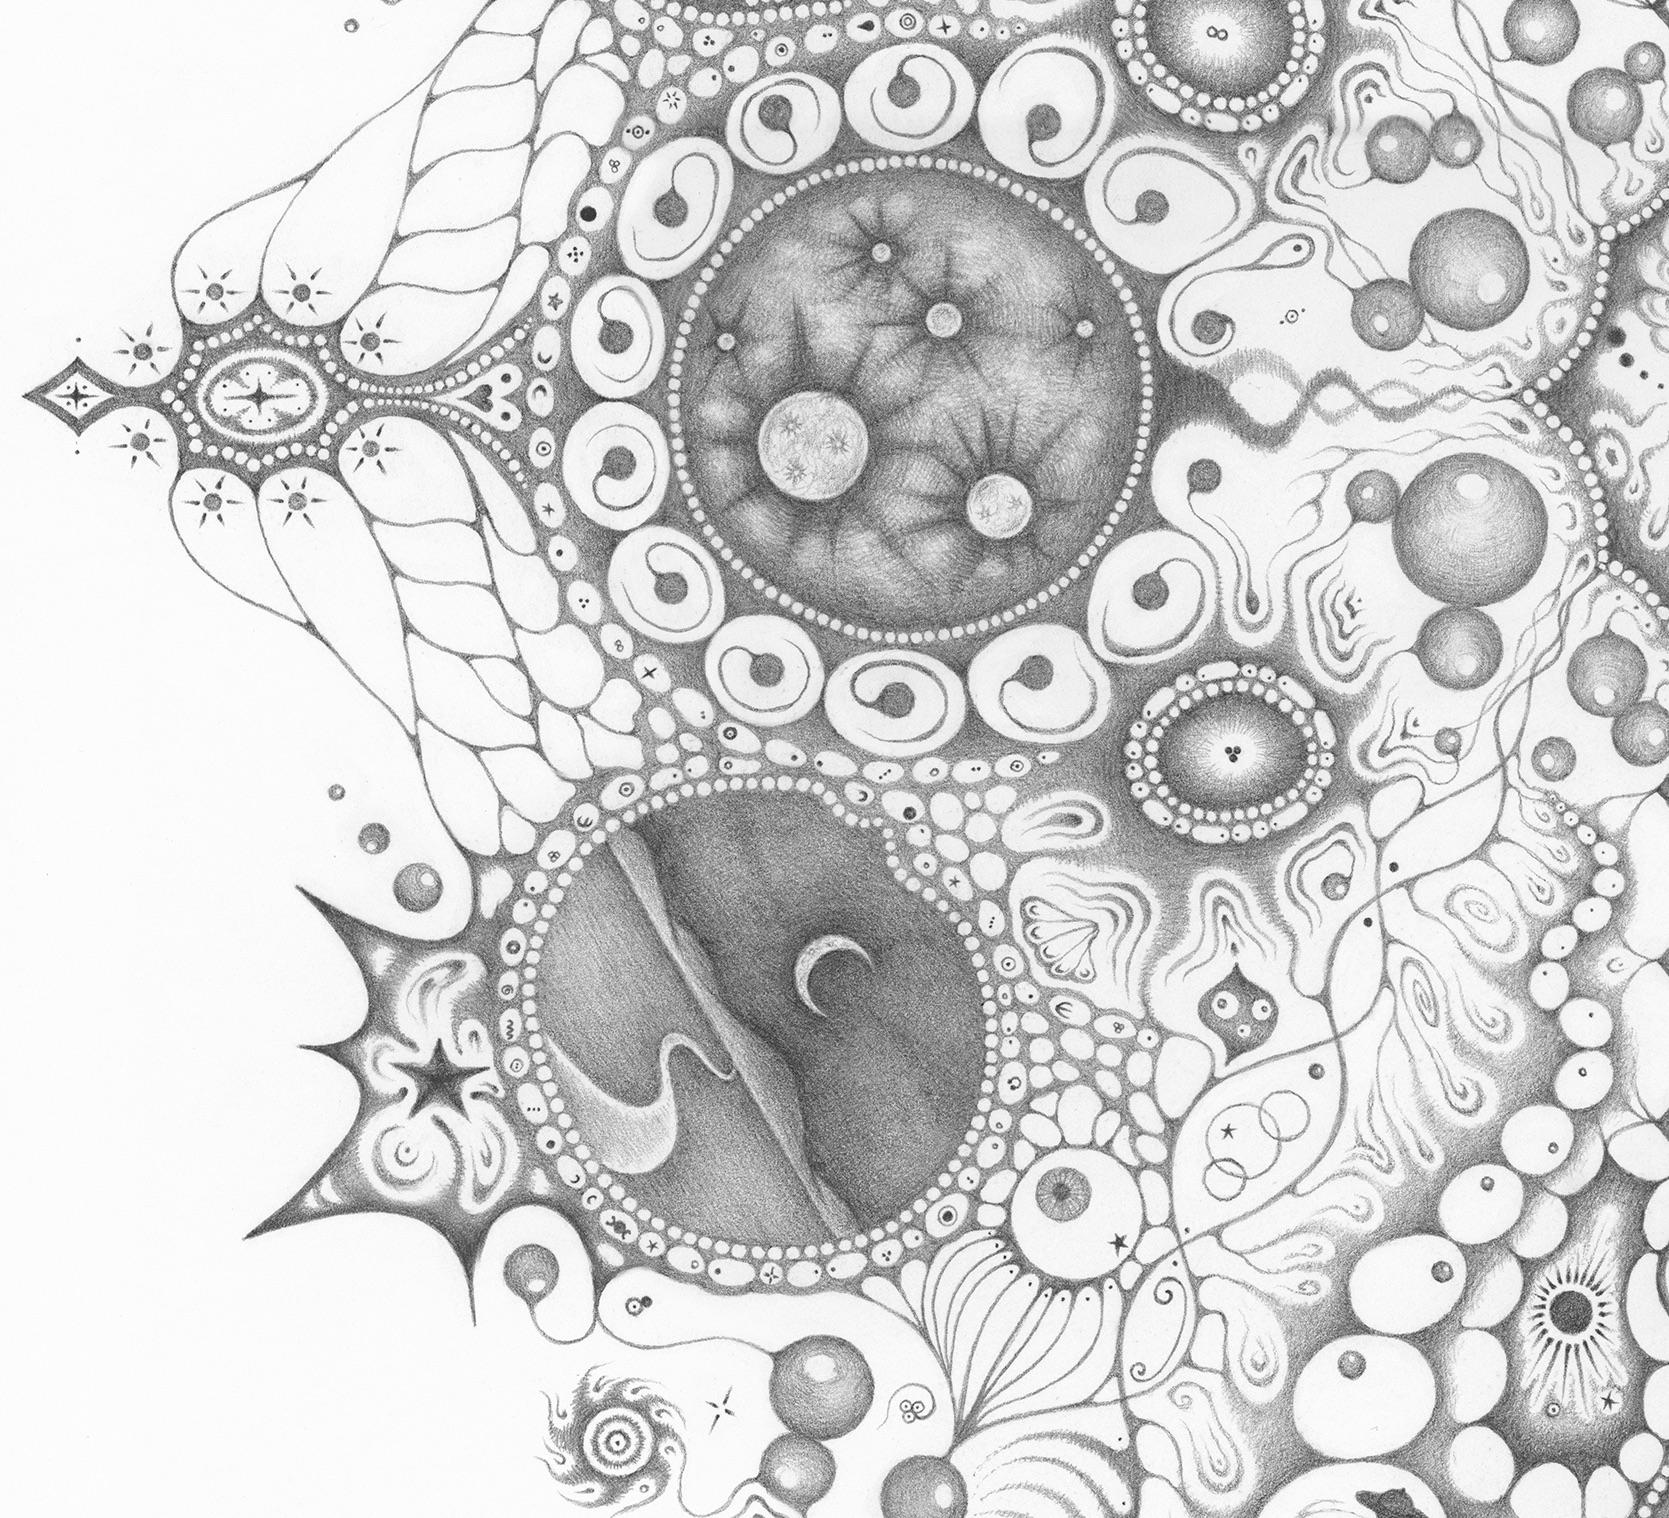 Snowflakes 125 Oneness, Planets, Crescent Moon, Patterns Mandala Pencil Drawing - Gray Abstract Drawing by Michiyo Ihara